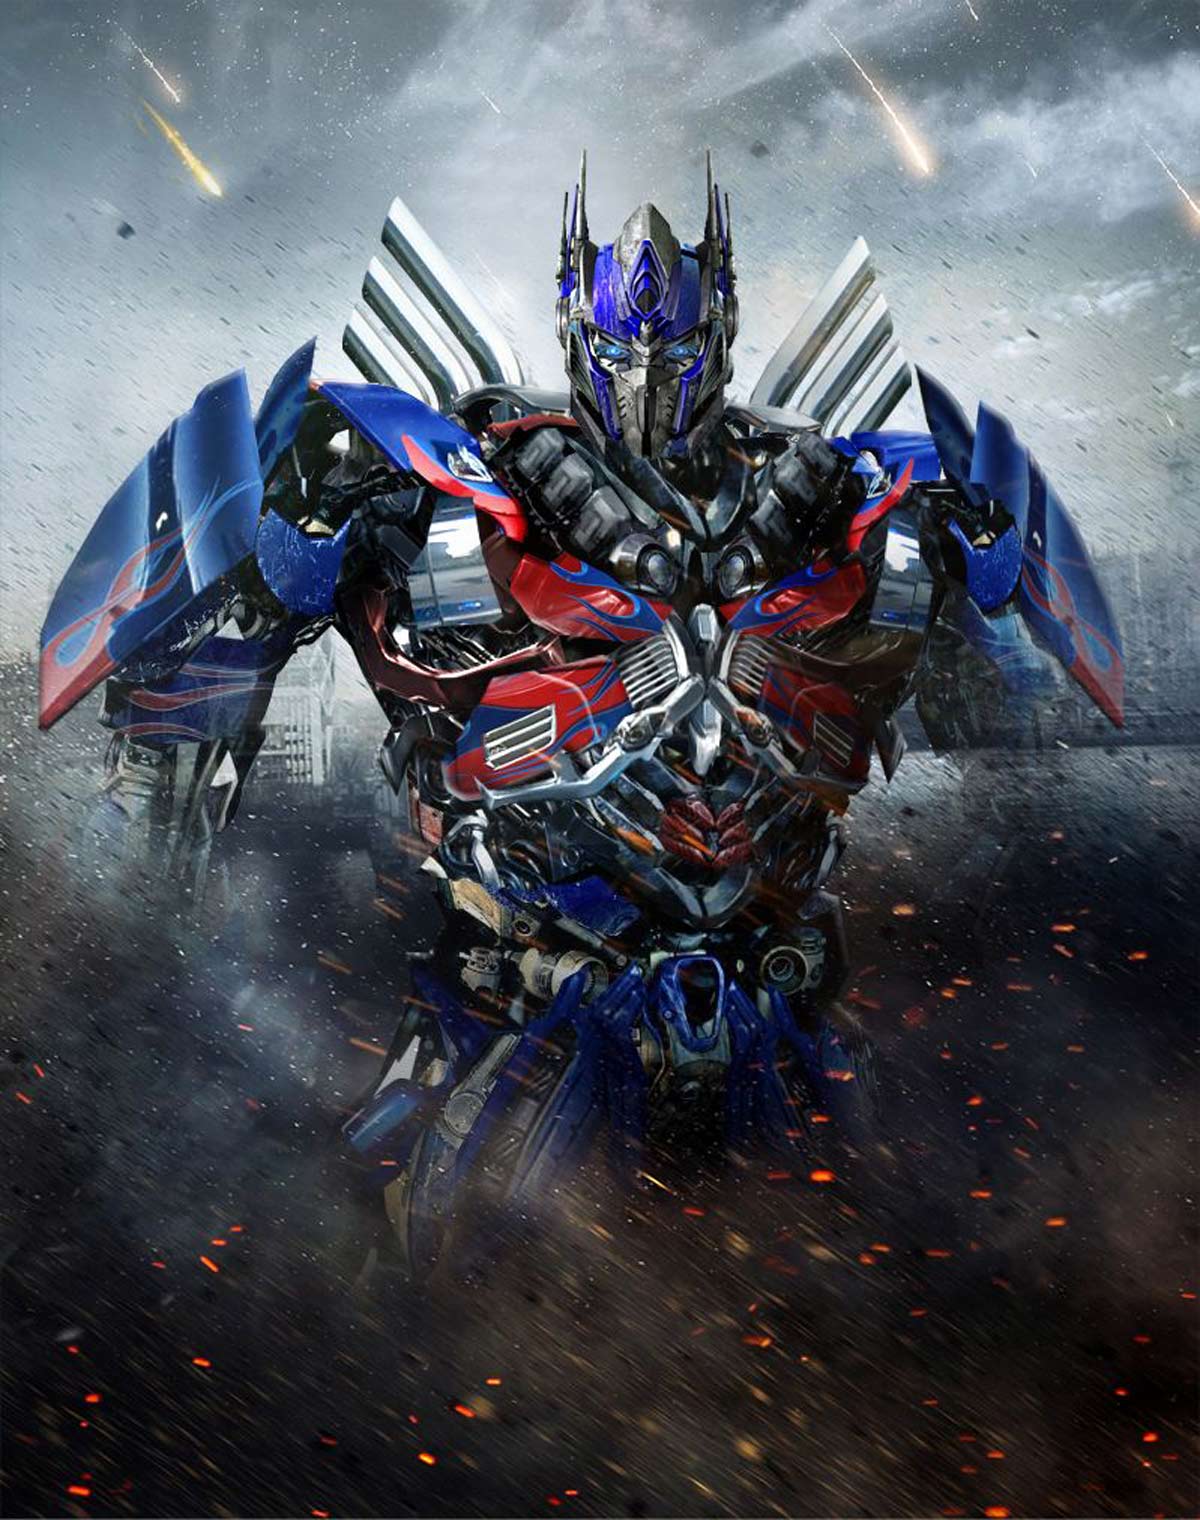 Transformers 4 Optimus Prime Truck - wallpaper